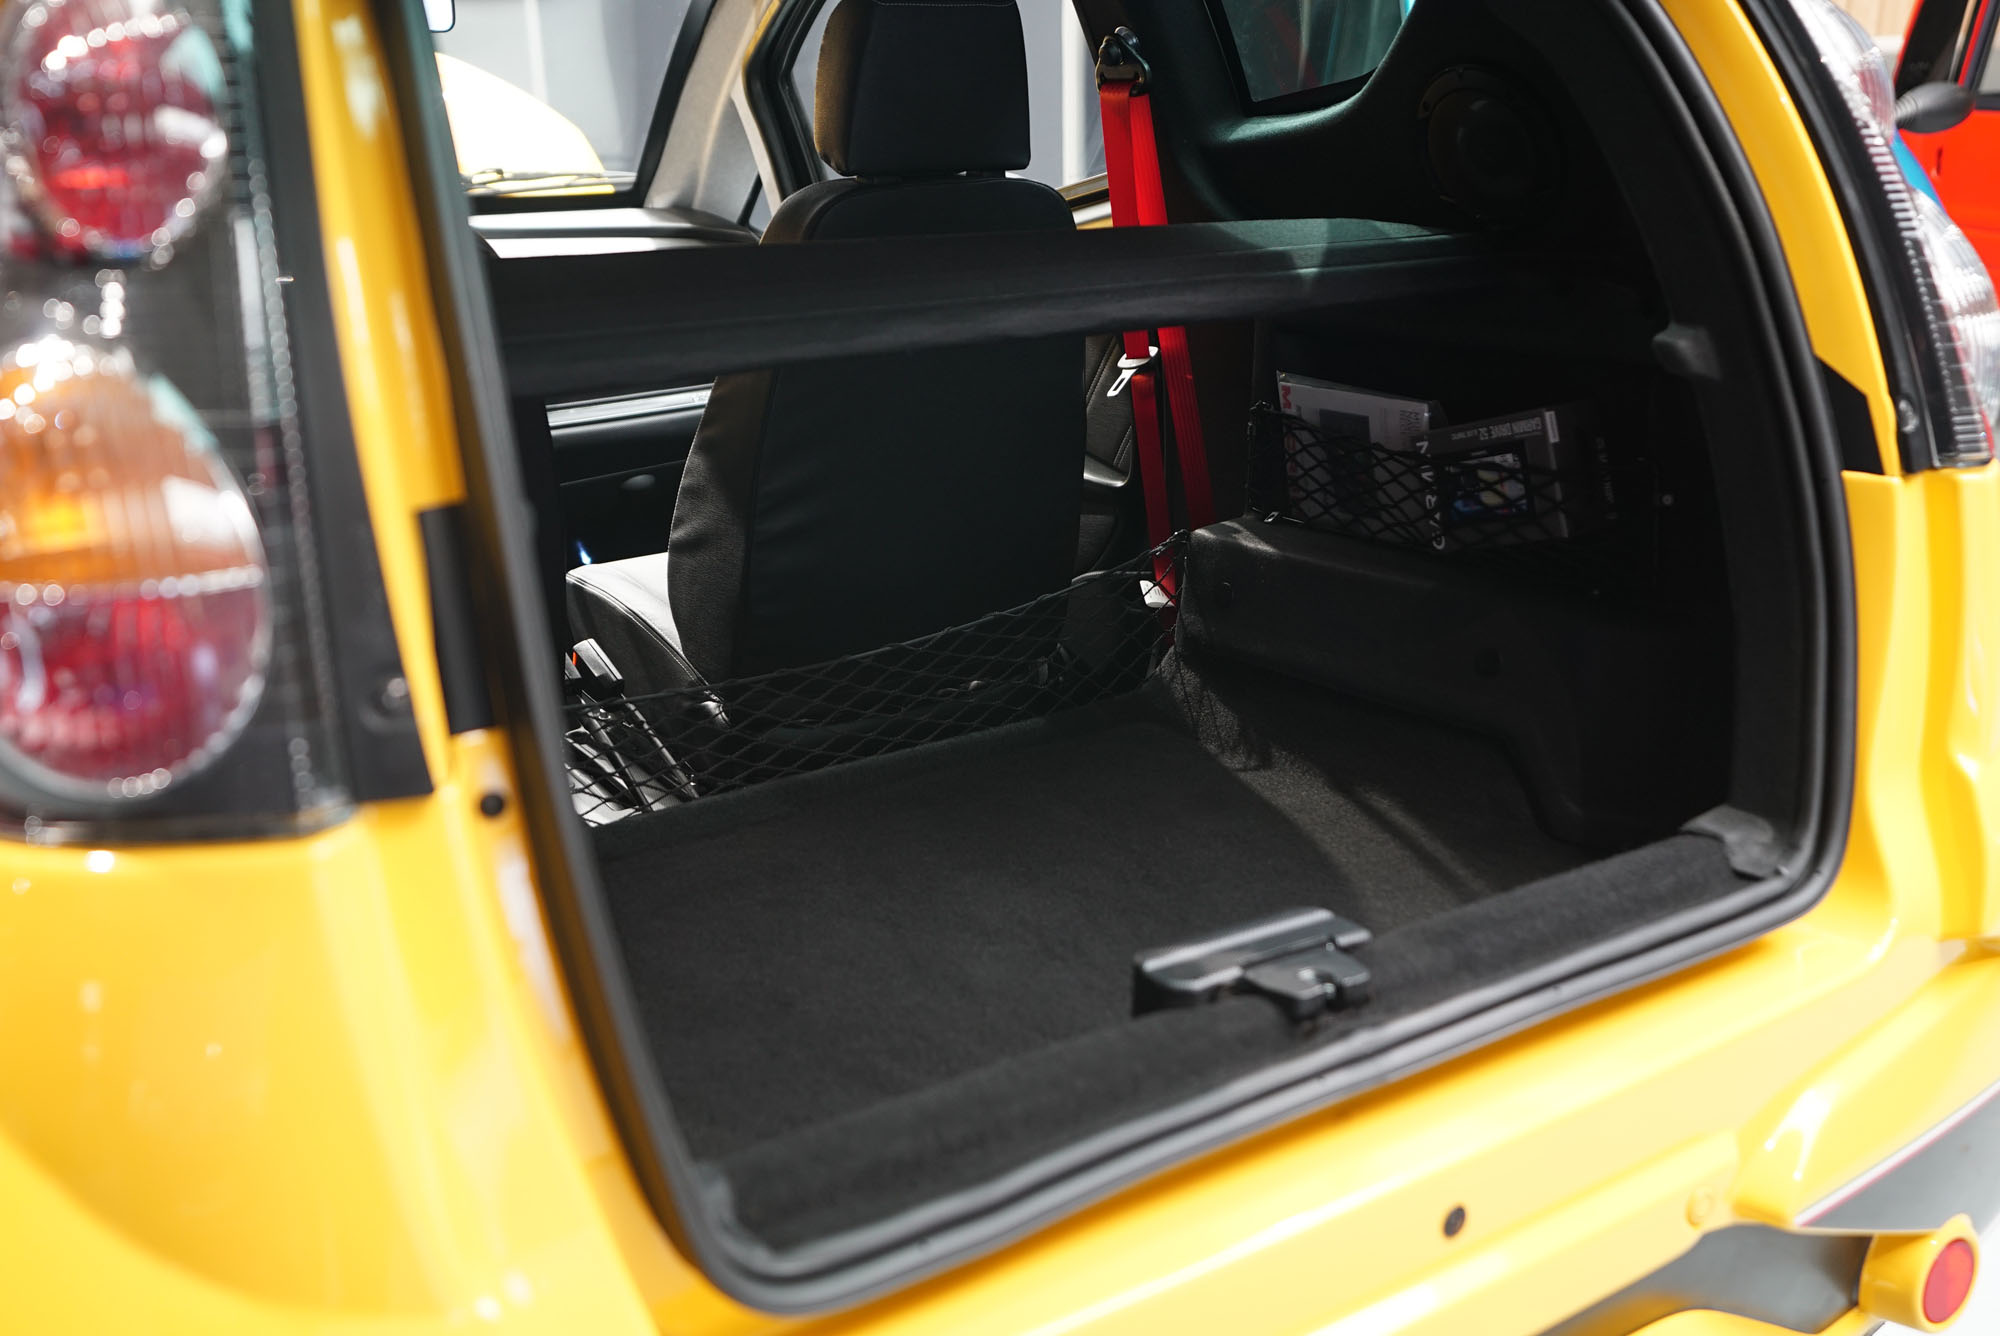 Geräumiger Kofferraum des Casalini M20. Im Blick auch die roten Gurte des Beifahrersitzes.